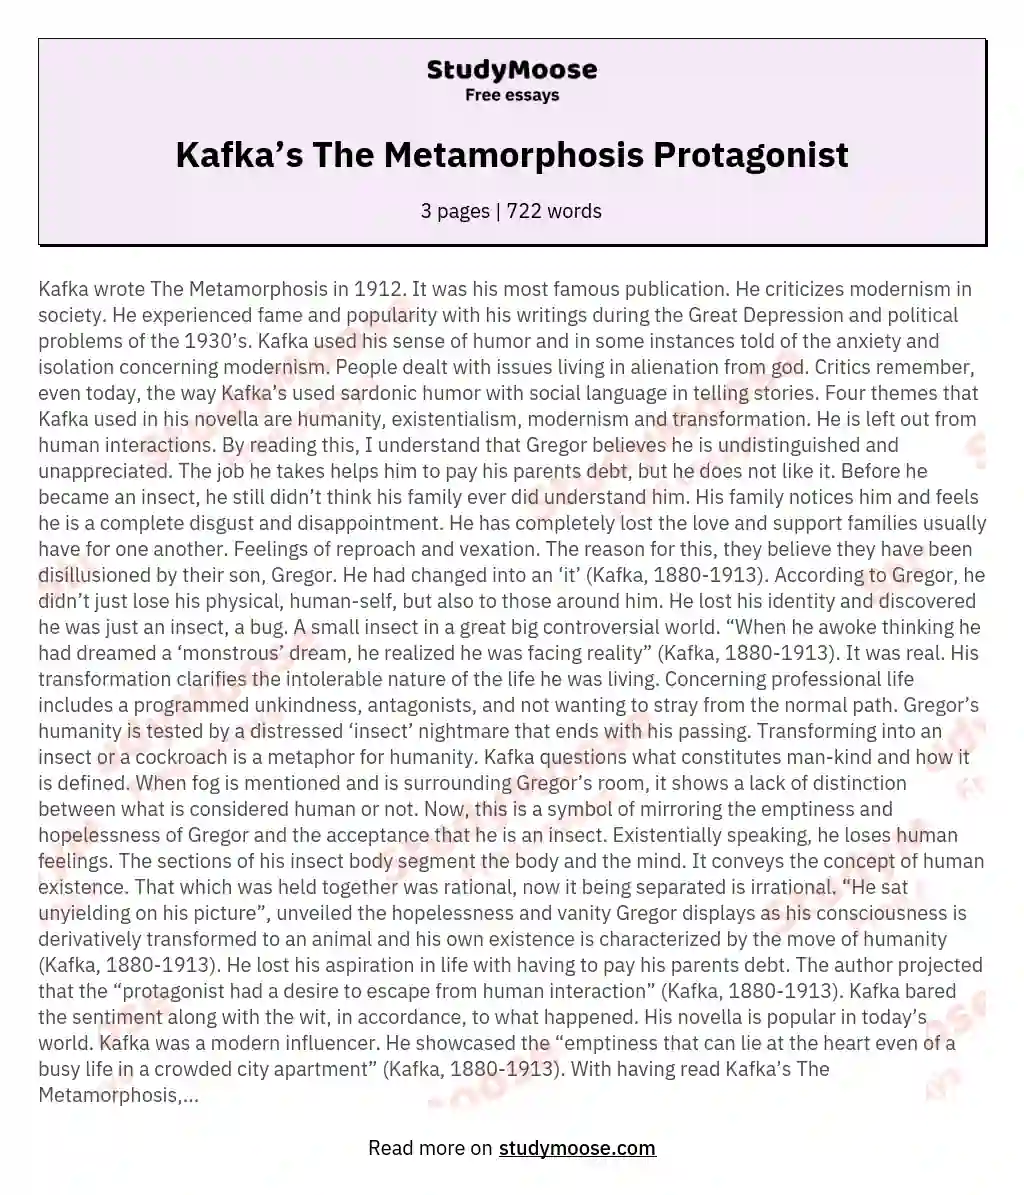 Kafka’s The Metamorphosis Protagonist